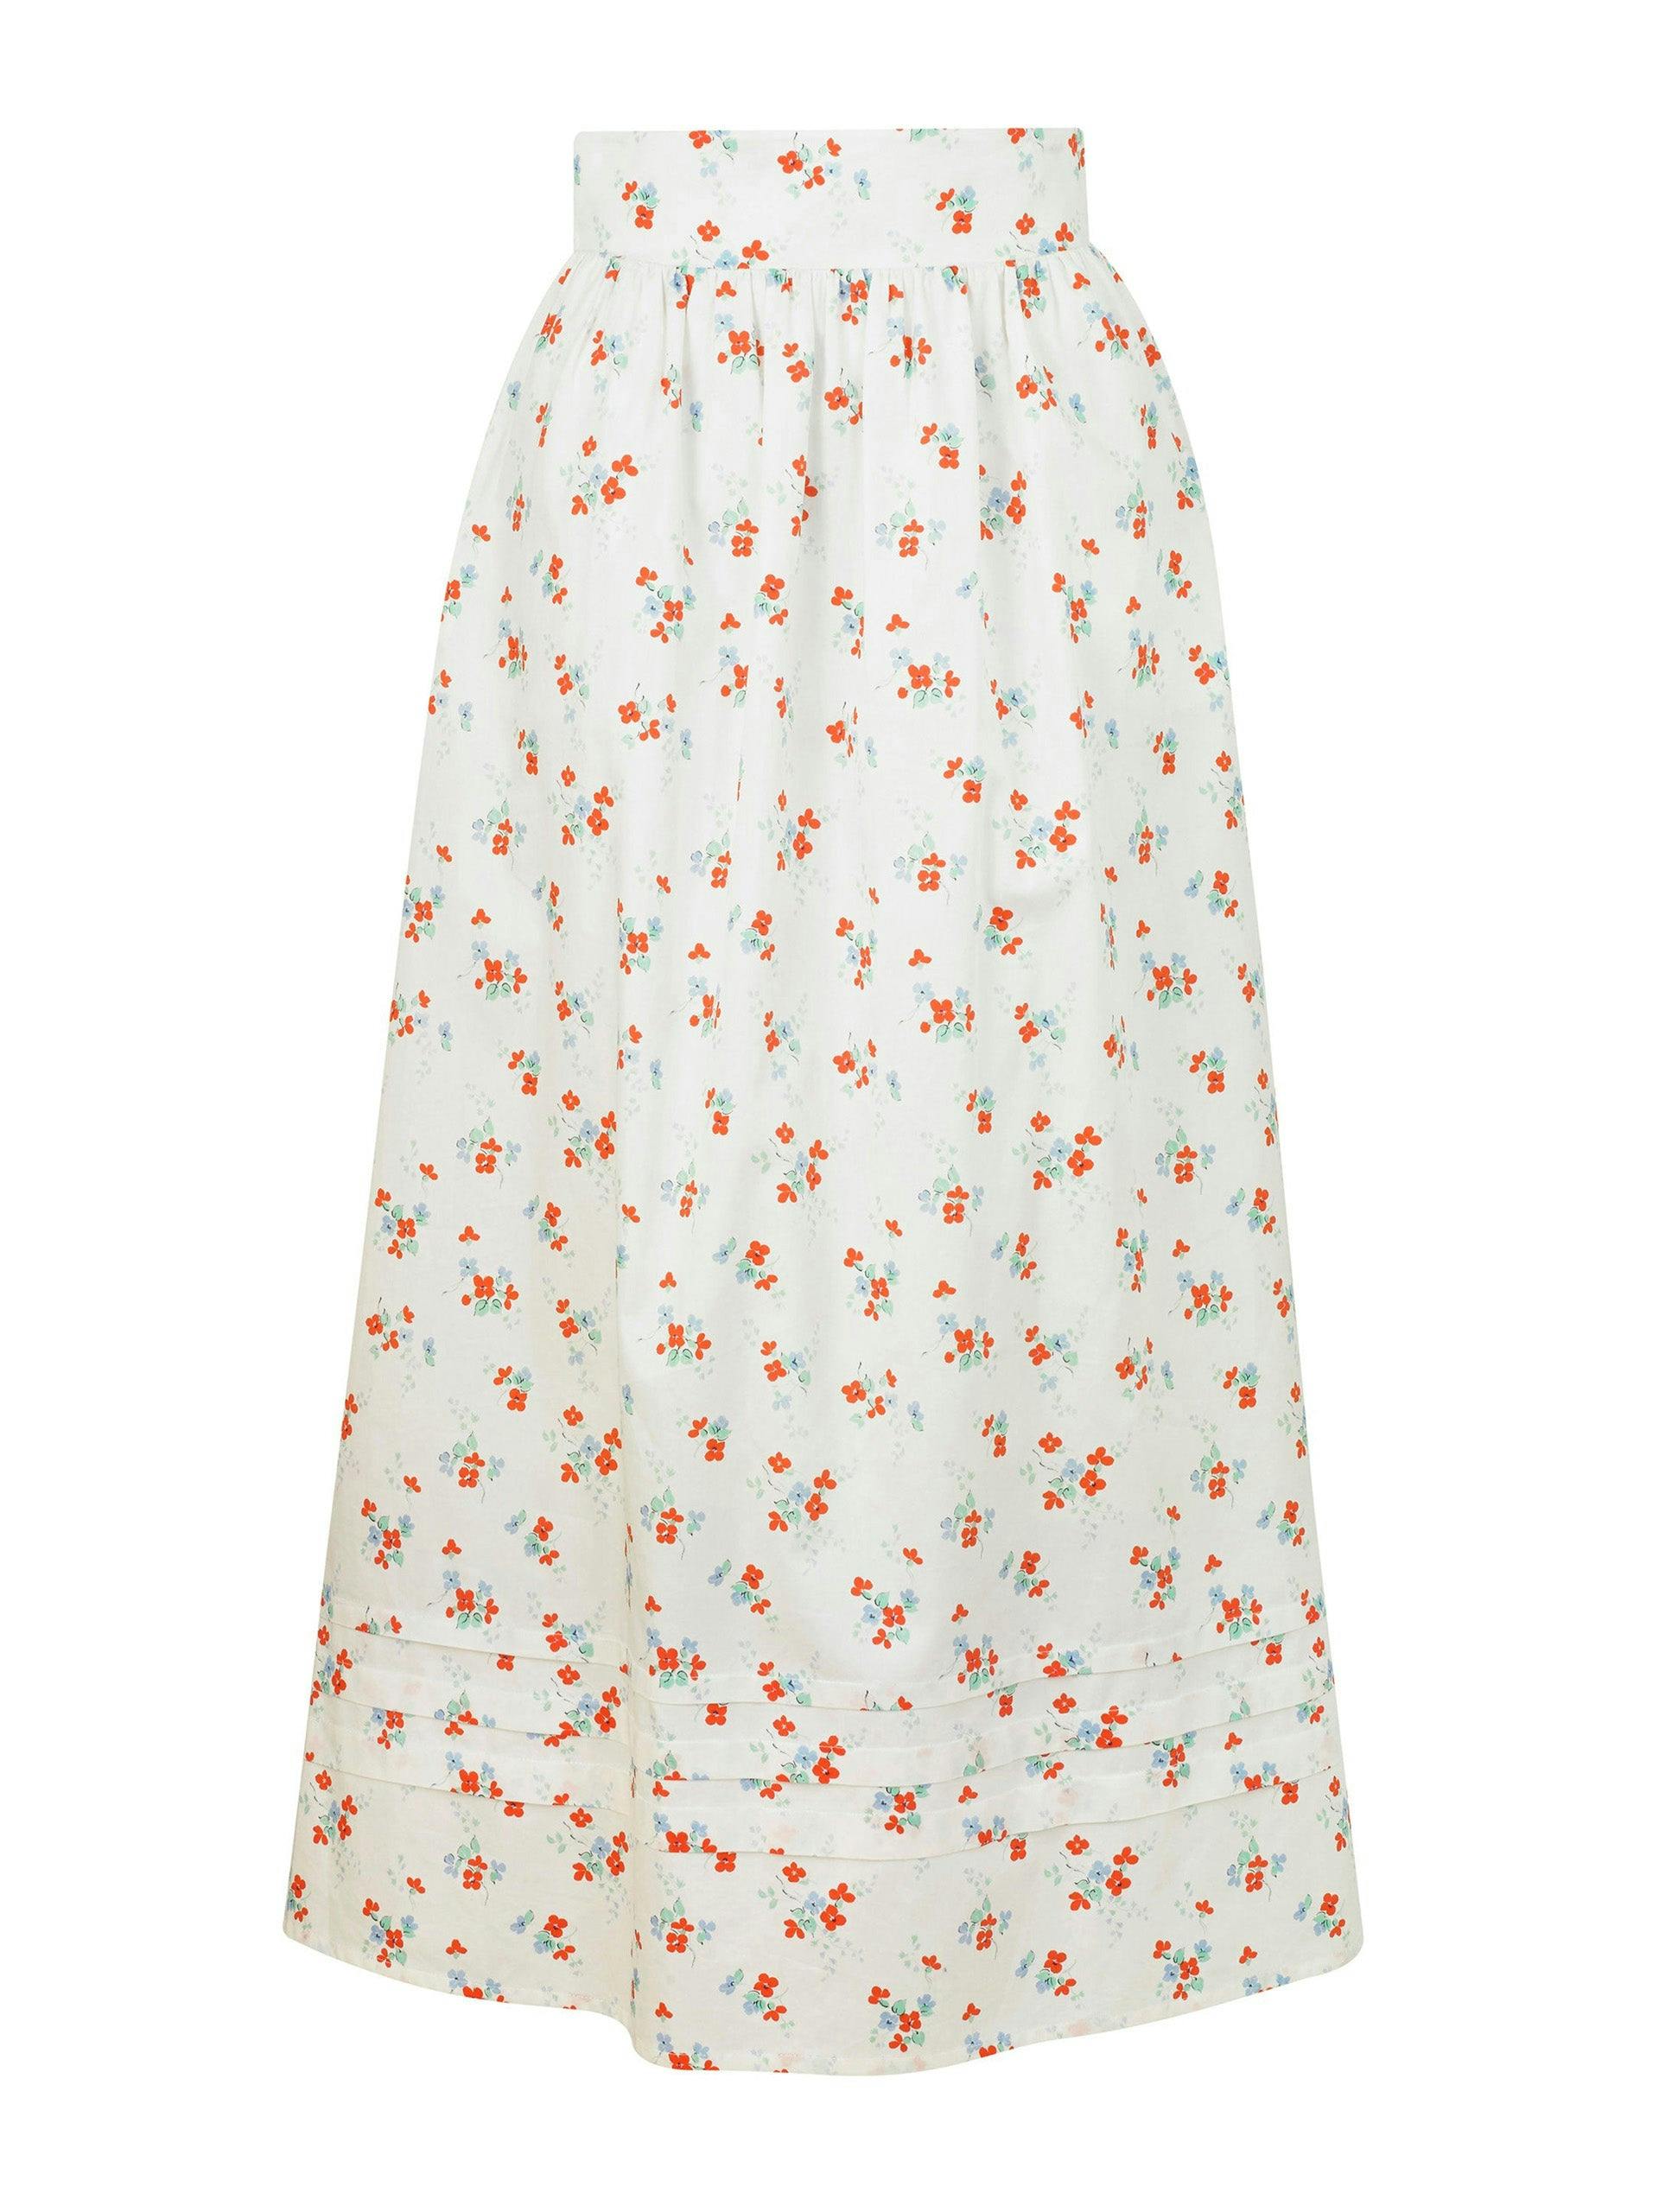 Bushka white floral print skirt